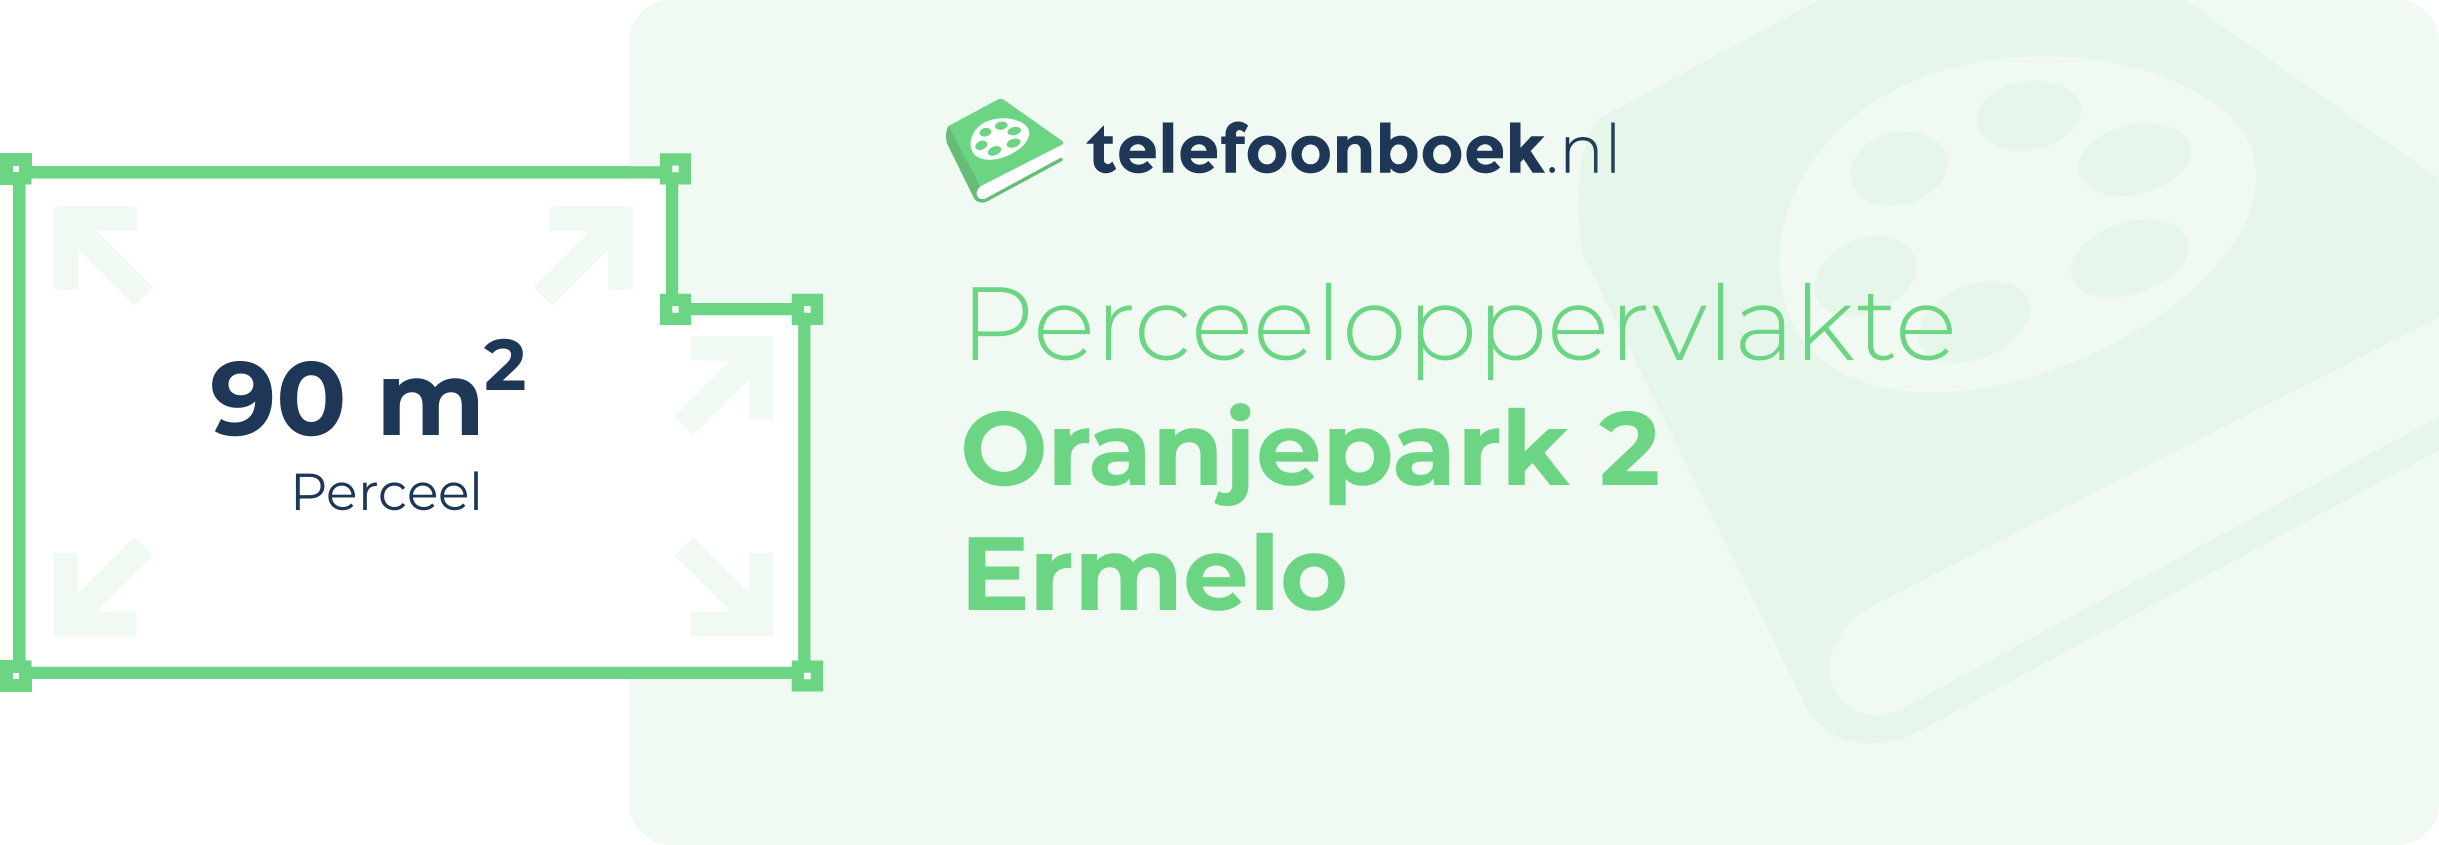 Perceeloppervlakte Oranjepark 2 Ermelo